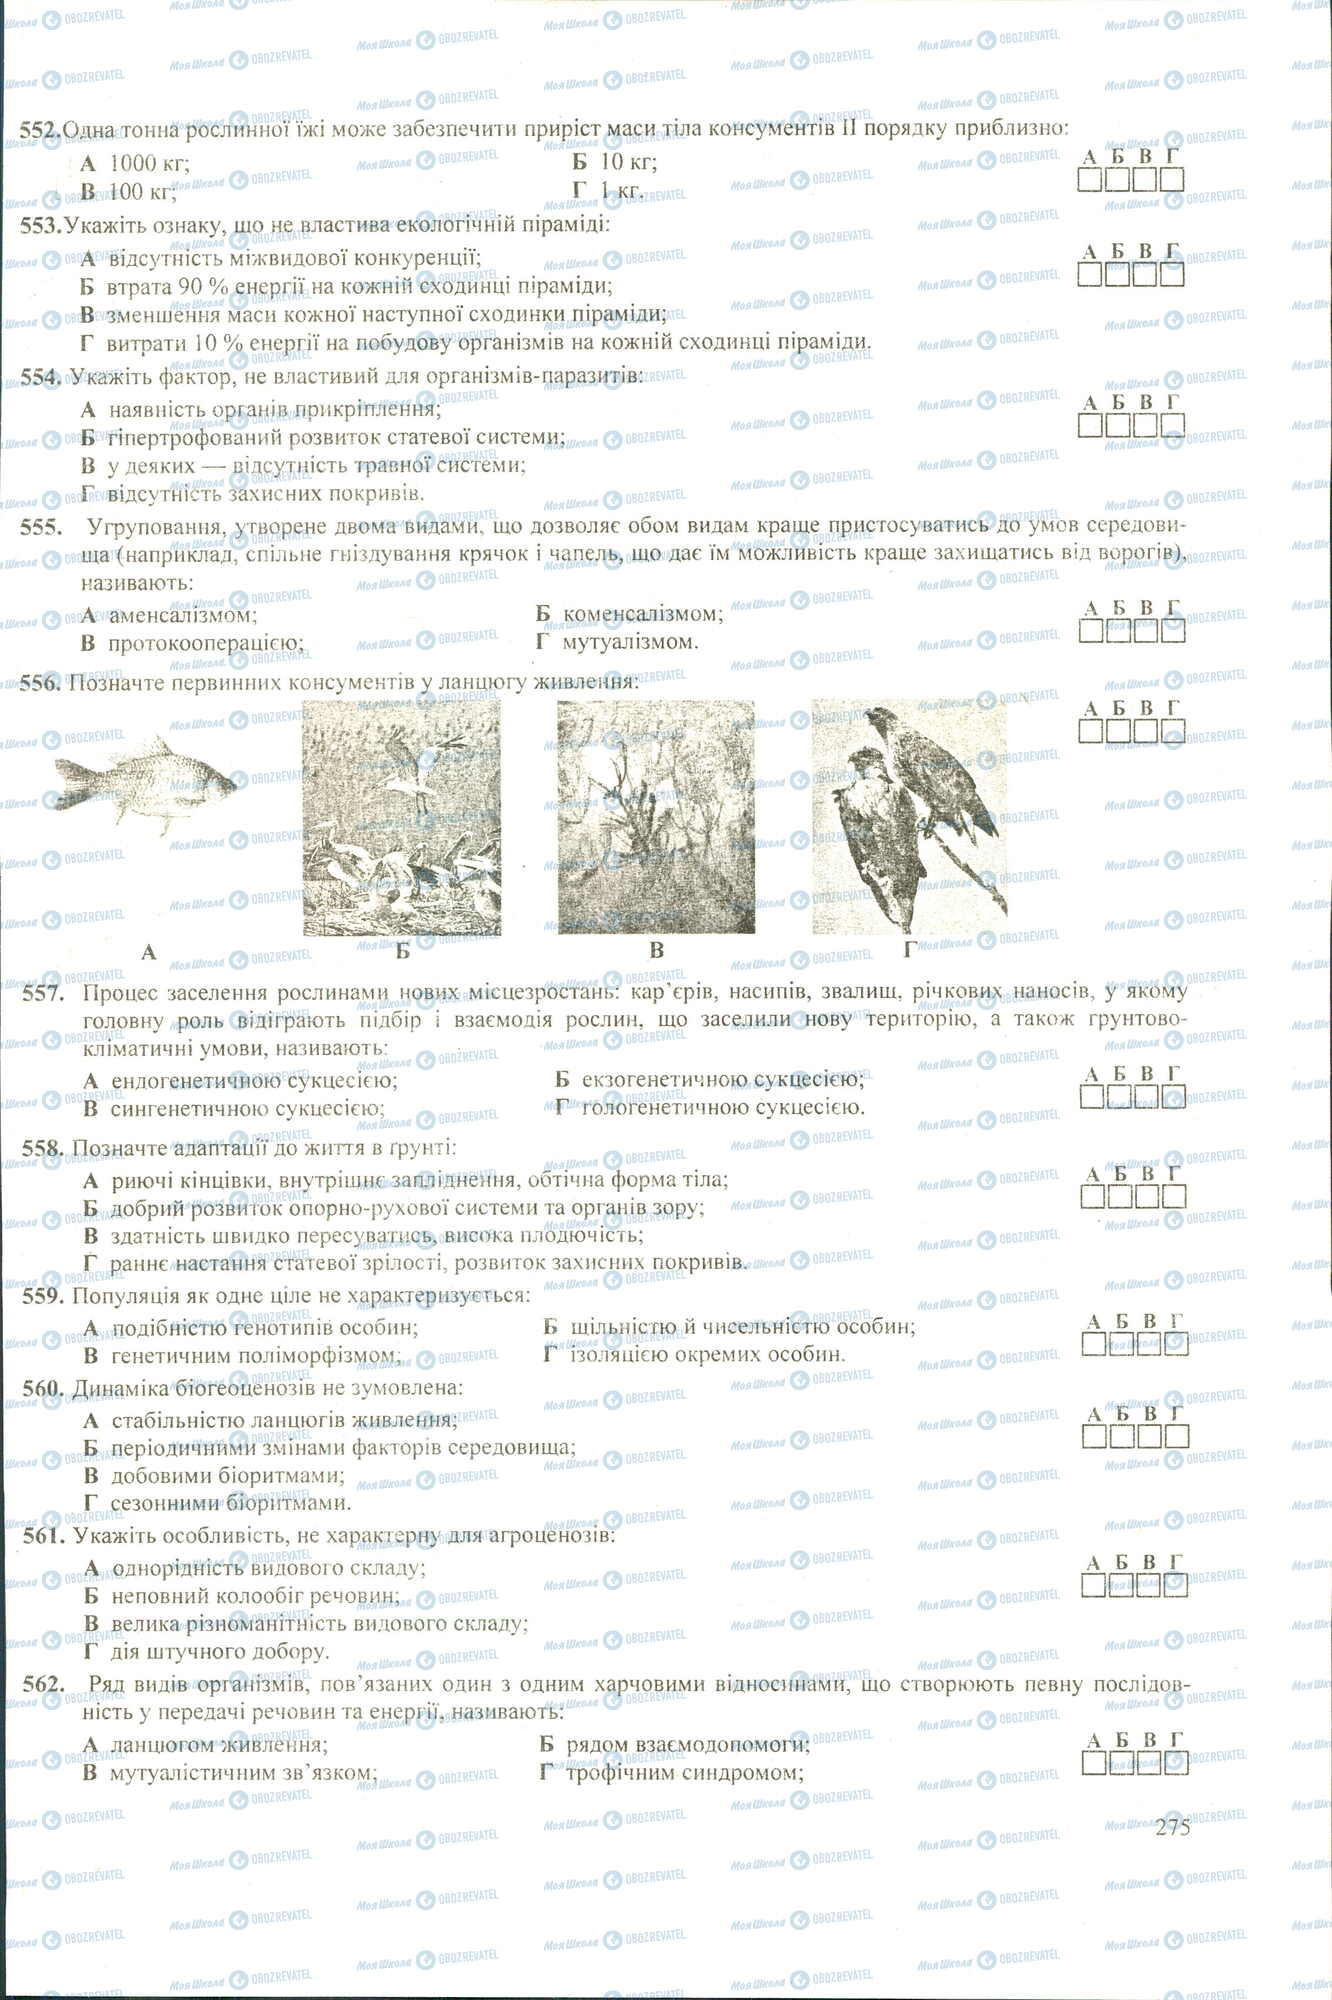 ЗНО Биология 11 класс страница 552-562